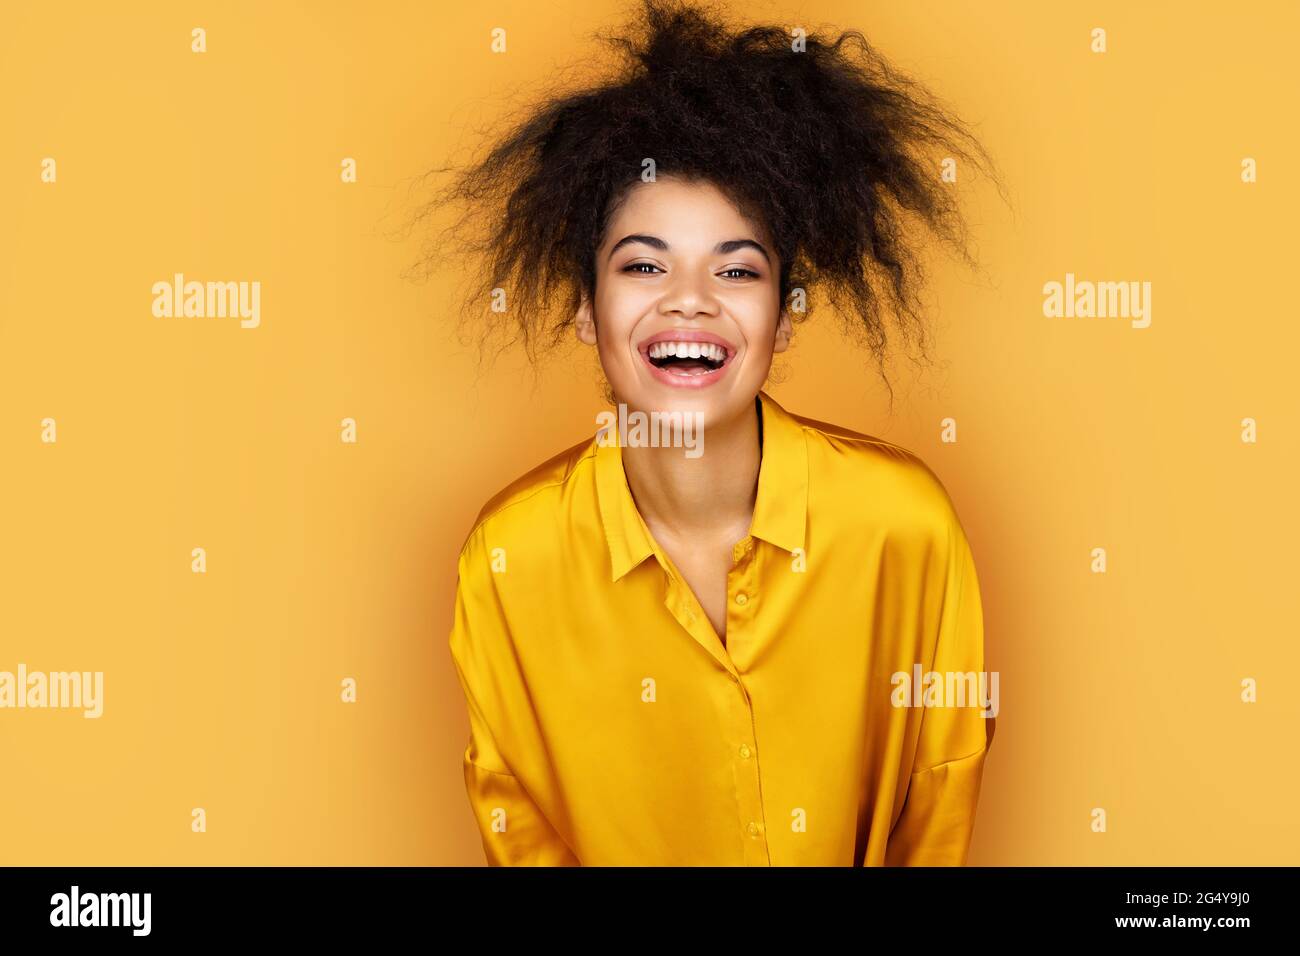 La chica con exceso de alegría no puede dejar de reír. Foto de una niña afroamericana sobre fondo amarillo Foto de stock